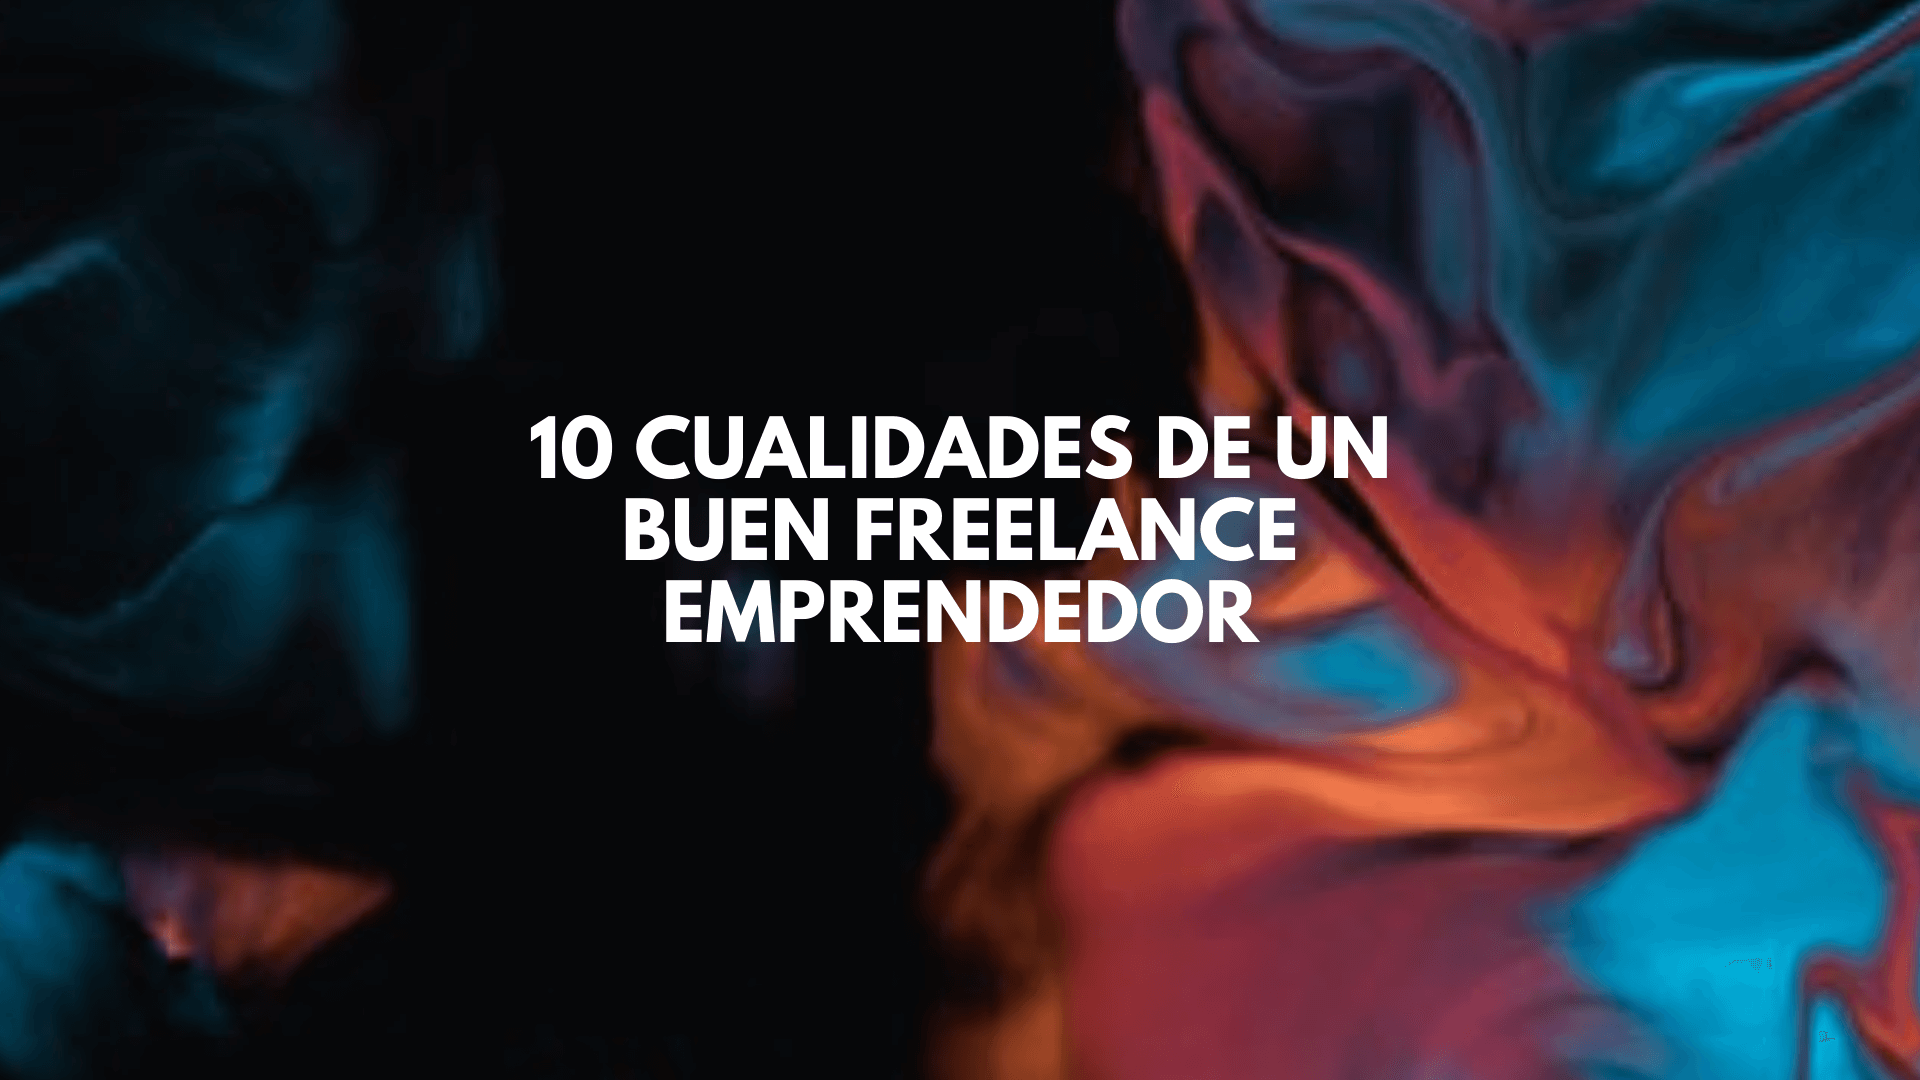 10 cualidades de un buen freelance emprendedor